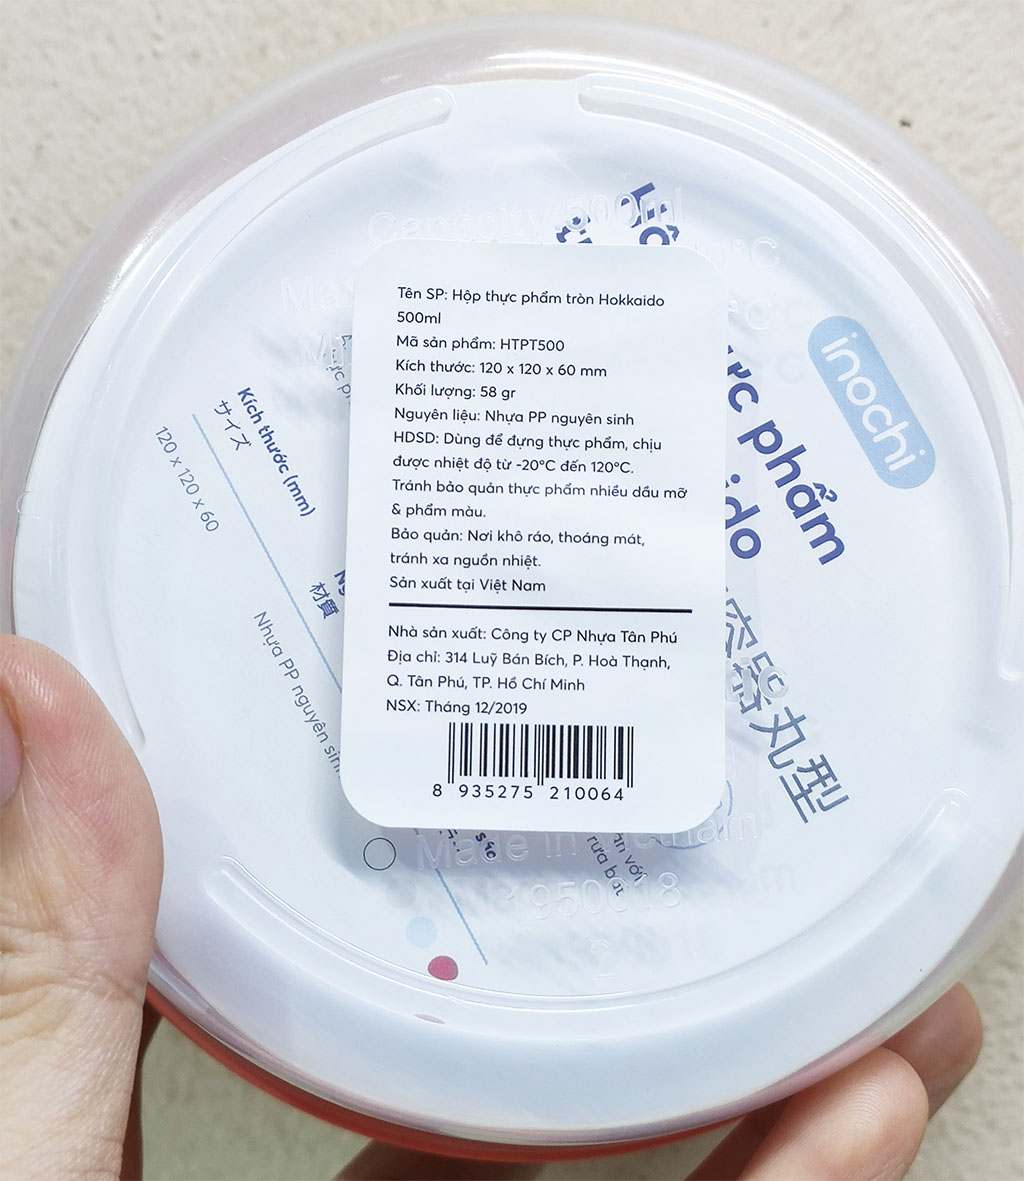 Hộp nhựa đựng thực phẩm tròn Hokkaido 500ml hàng xuất Nhật